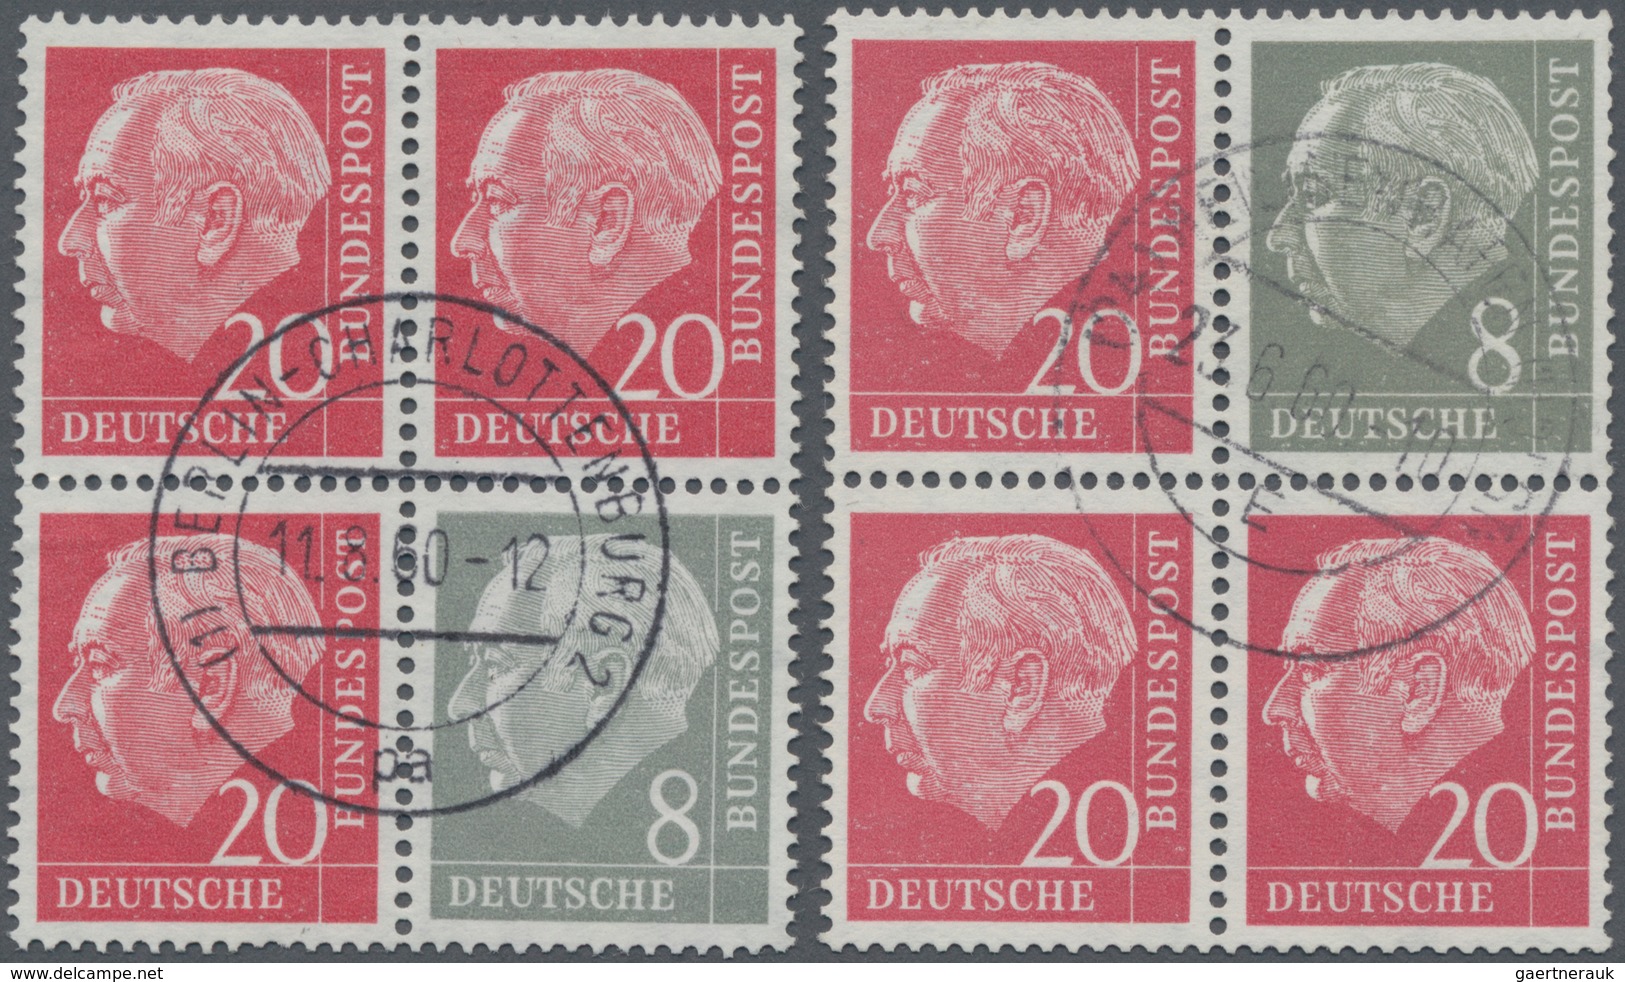 Bundesrepublik - Zusammendrucke: 1960, Heuss Liegendes WZ, Senkr. Zusammendruck 8+20 Pfg. Erstauflag - Zusammendrucke